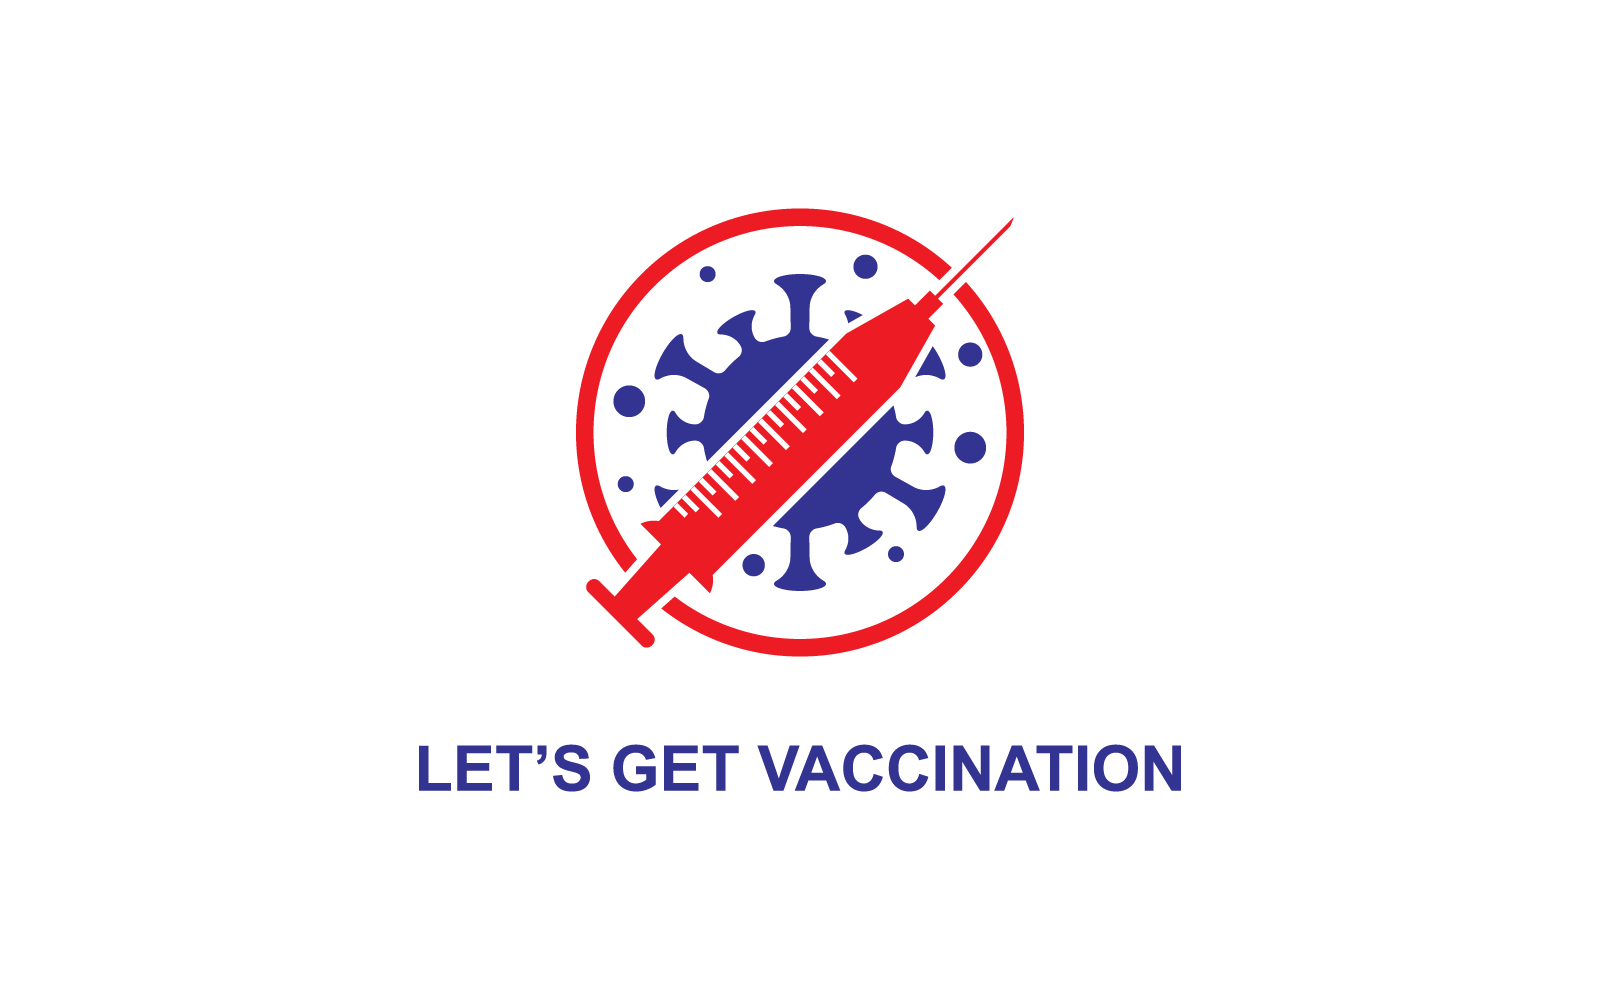 Vaccine covid 19 logo icon vector design template